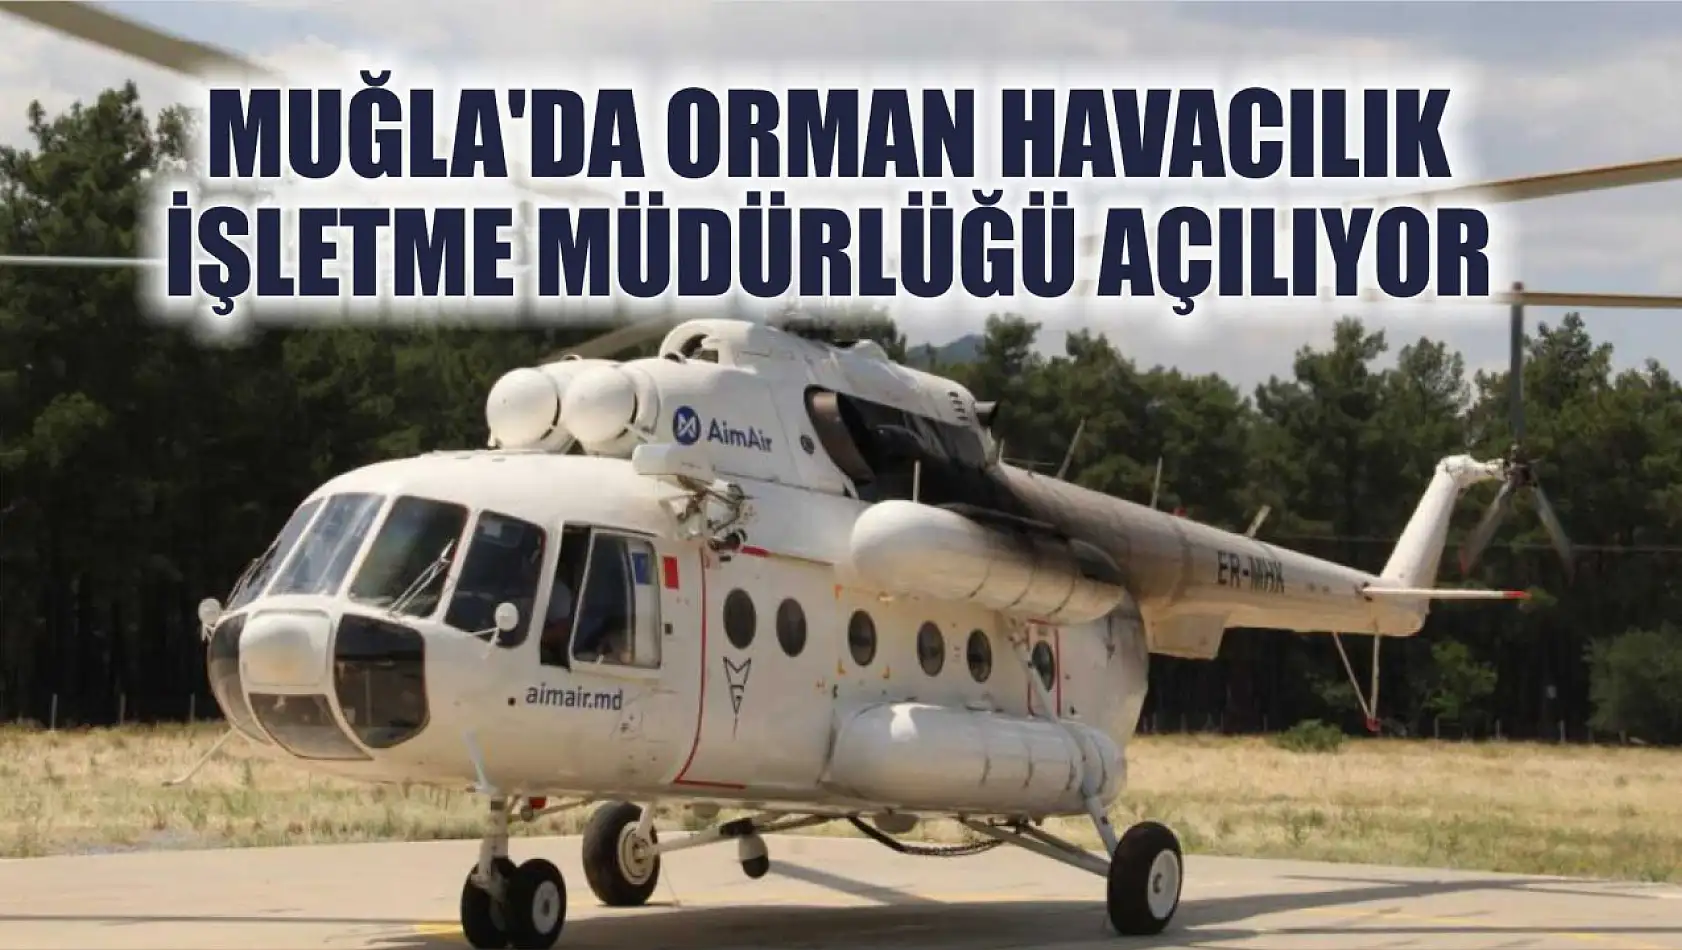 Muğla'da Orman Havacılık İşletme Müdürlüğü Açılıyor